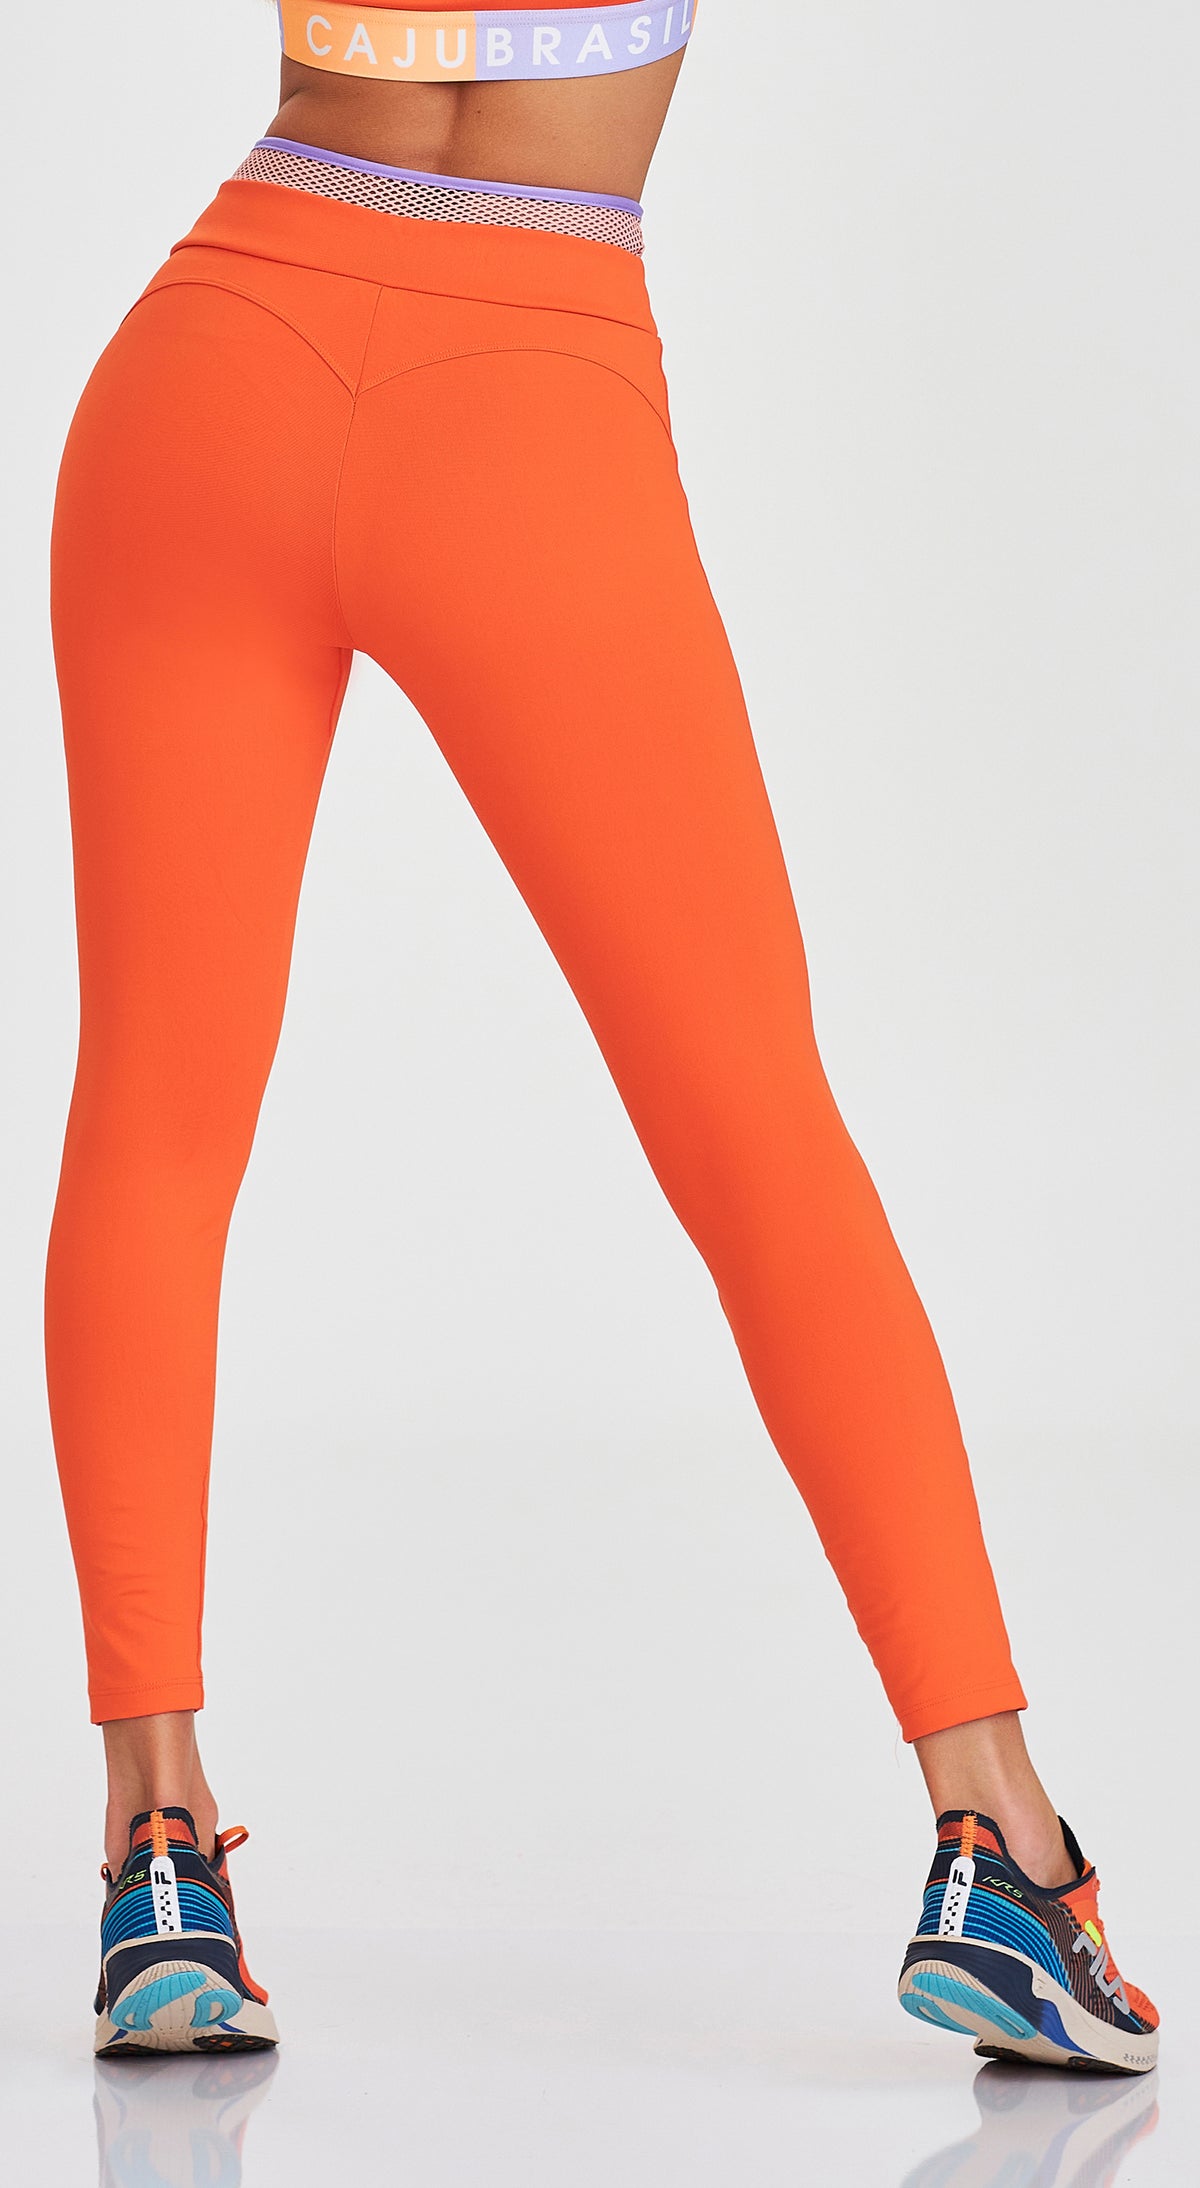 Tangerine Sky Leggings Tangerine Leggings Tie Dye Leggings Orange Leggings  Women's Leggings -  Canada